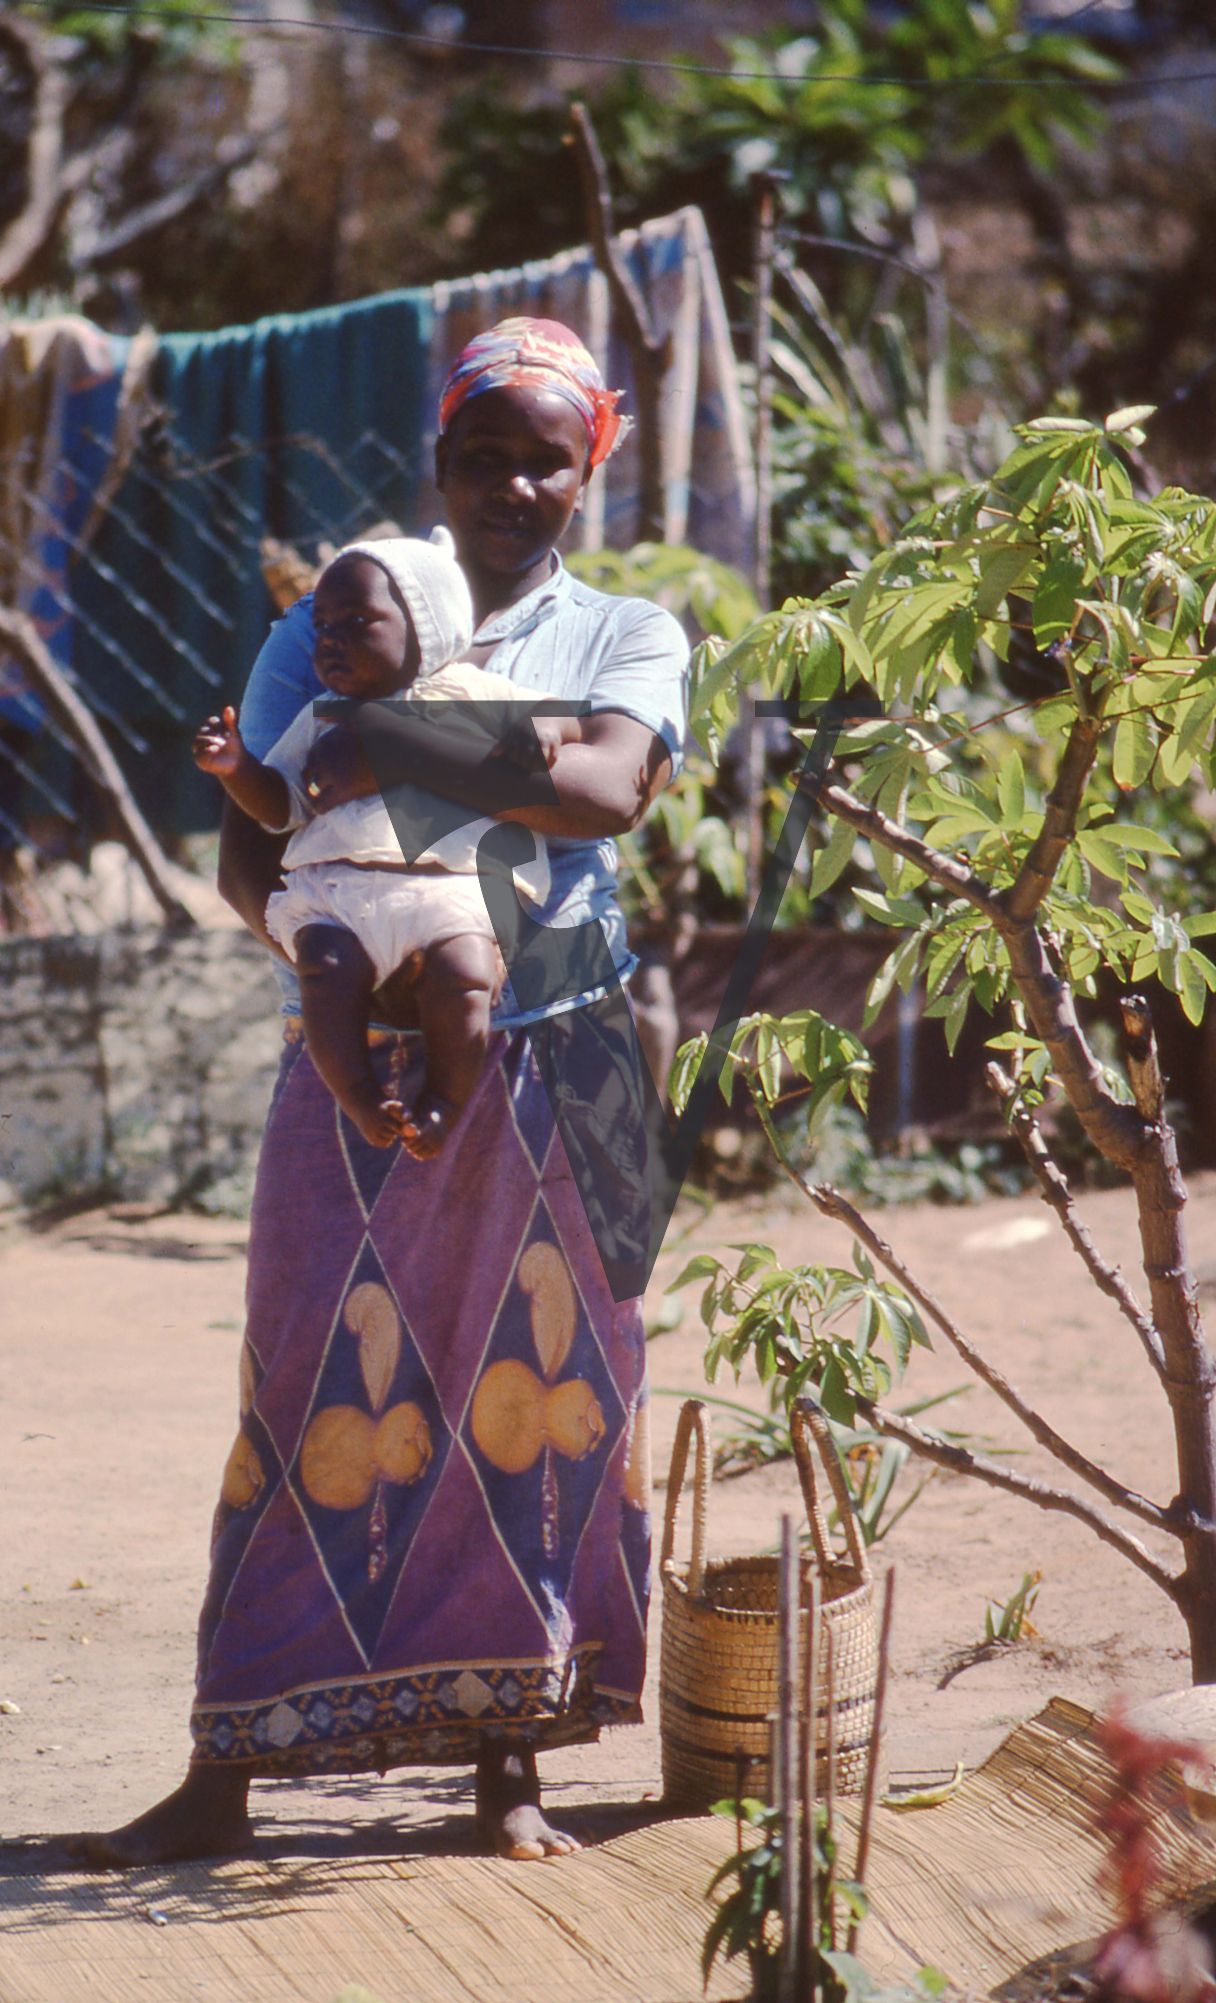 Zambia, Lusaka, woman and baby, portrait.